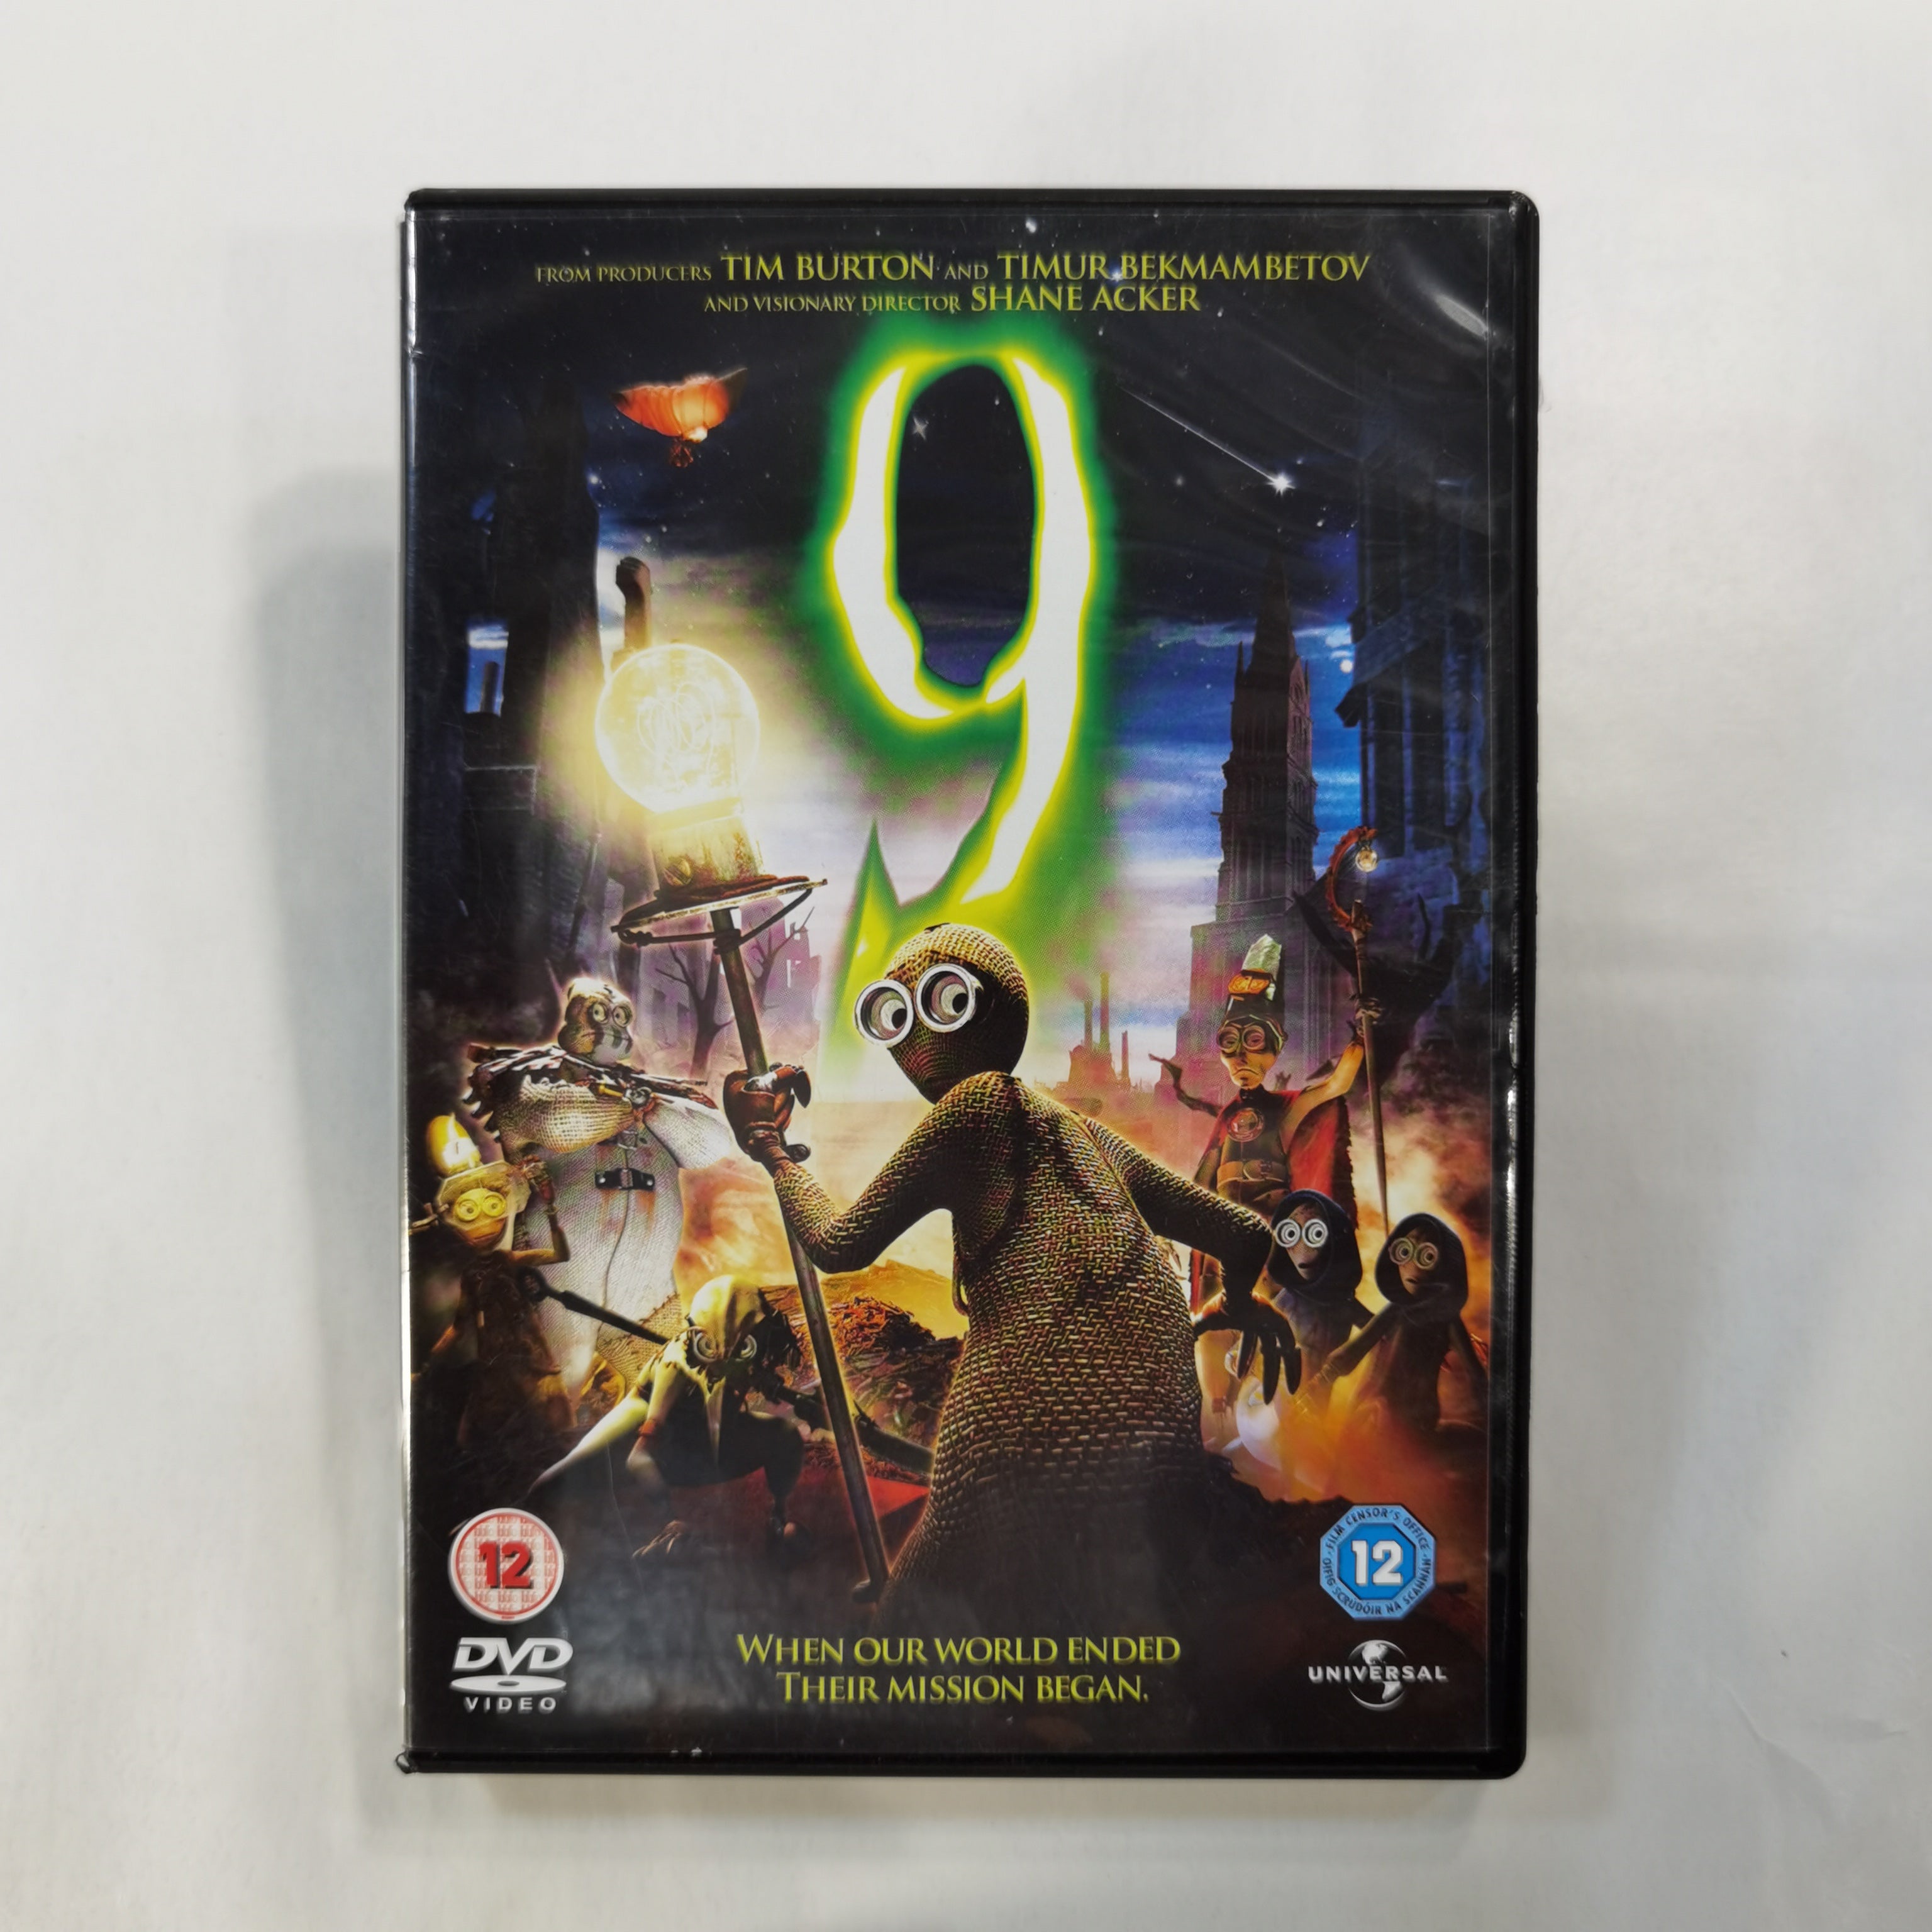 9 (2009) - DVD UK 2010